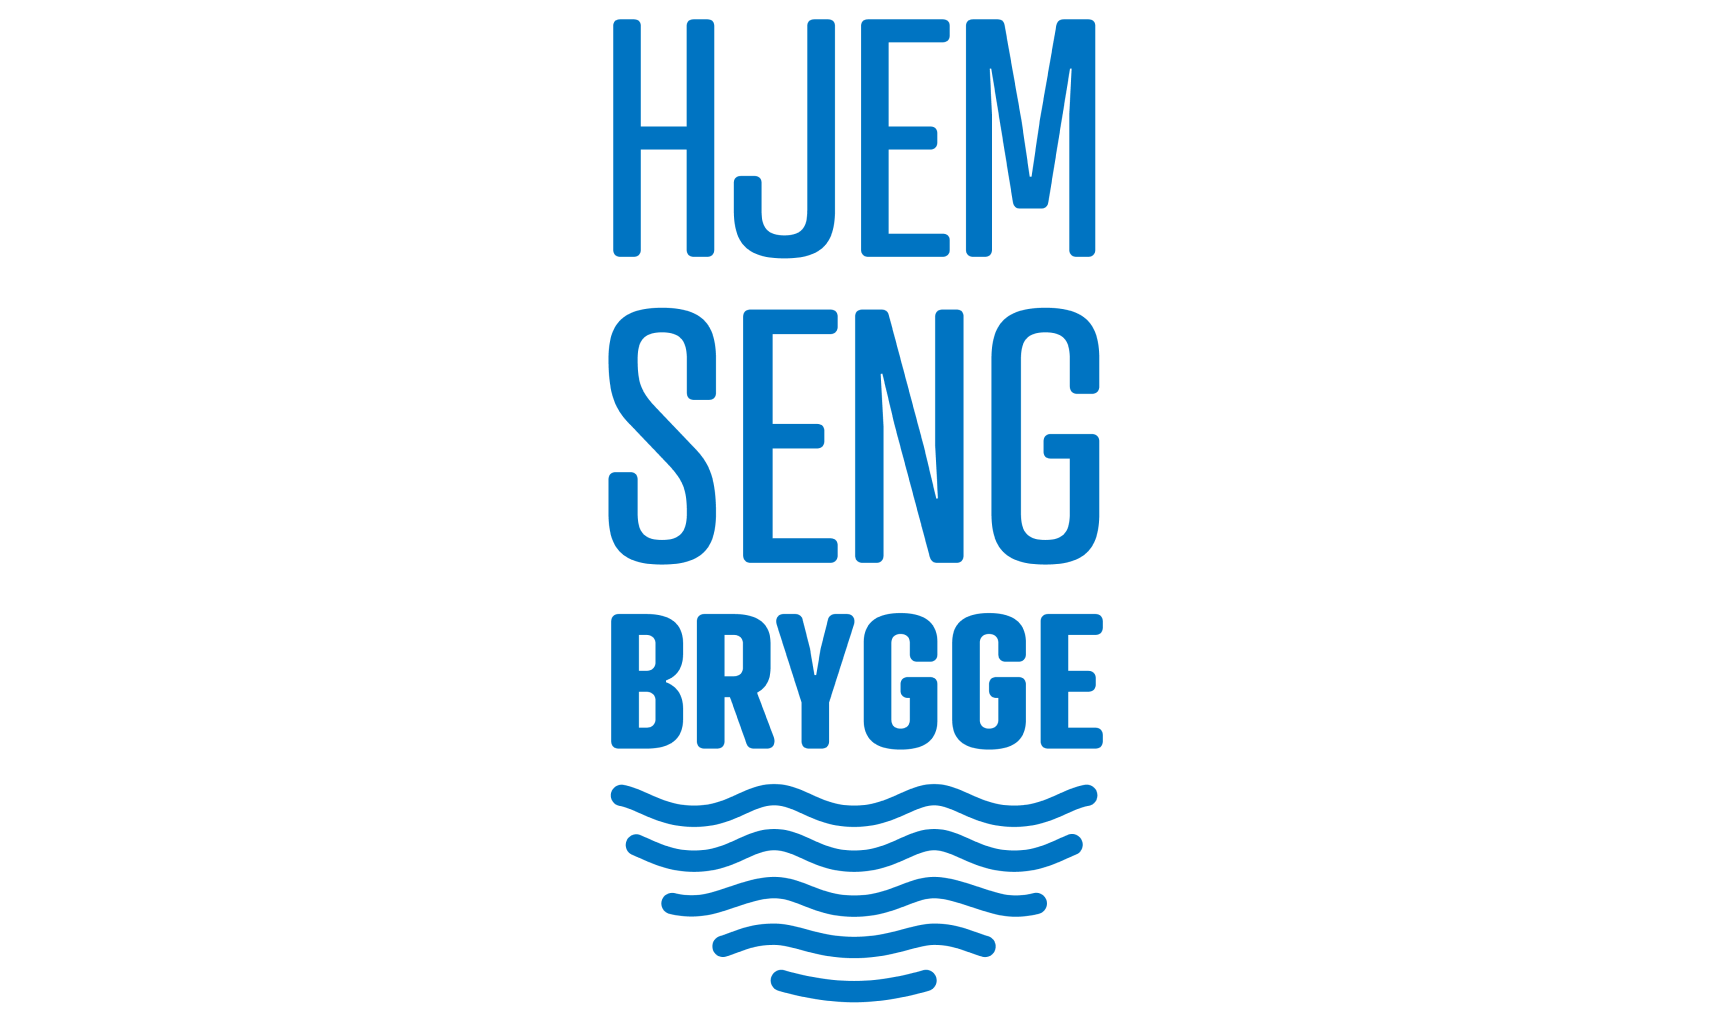 Logoen for Hjemseng Brygge.